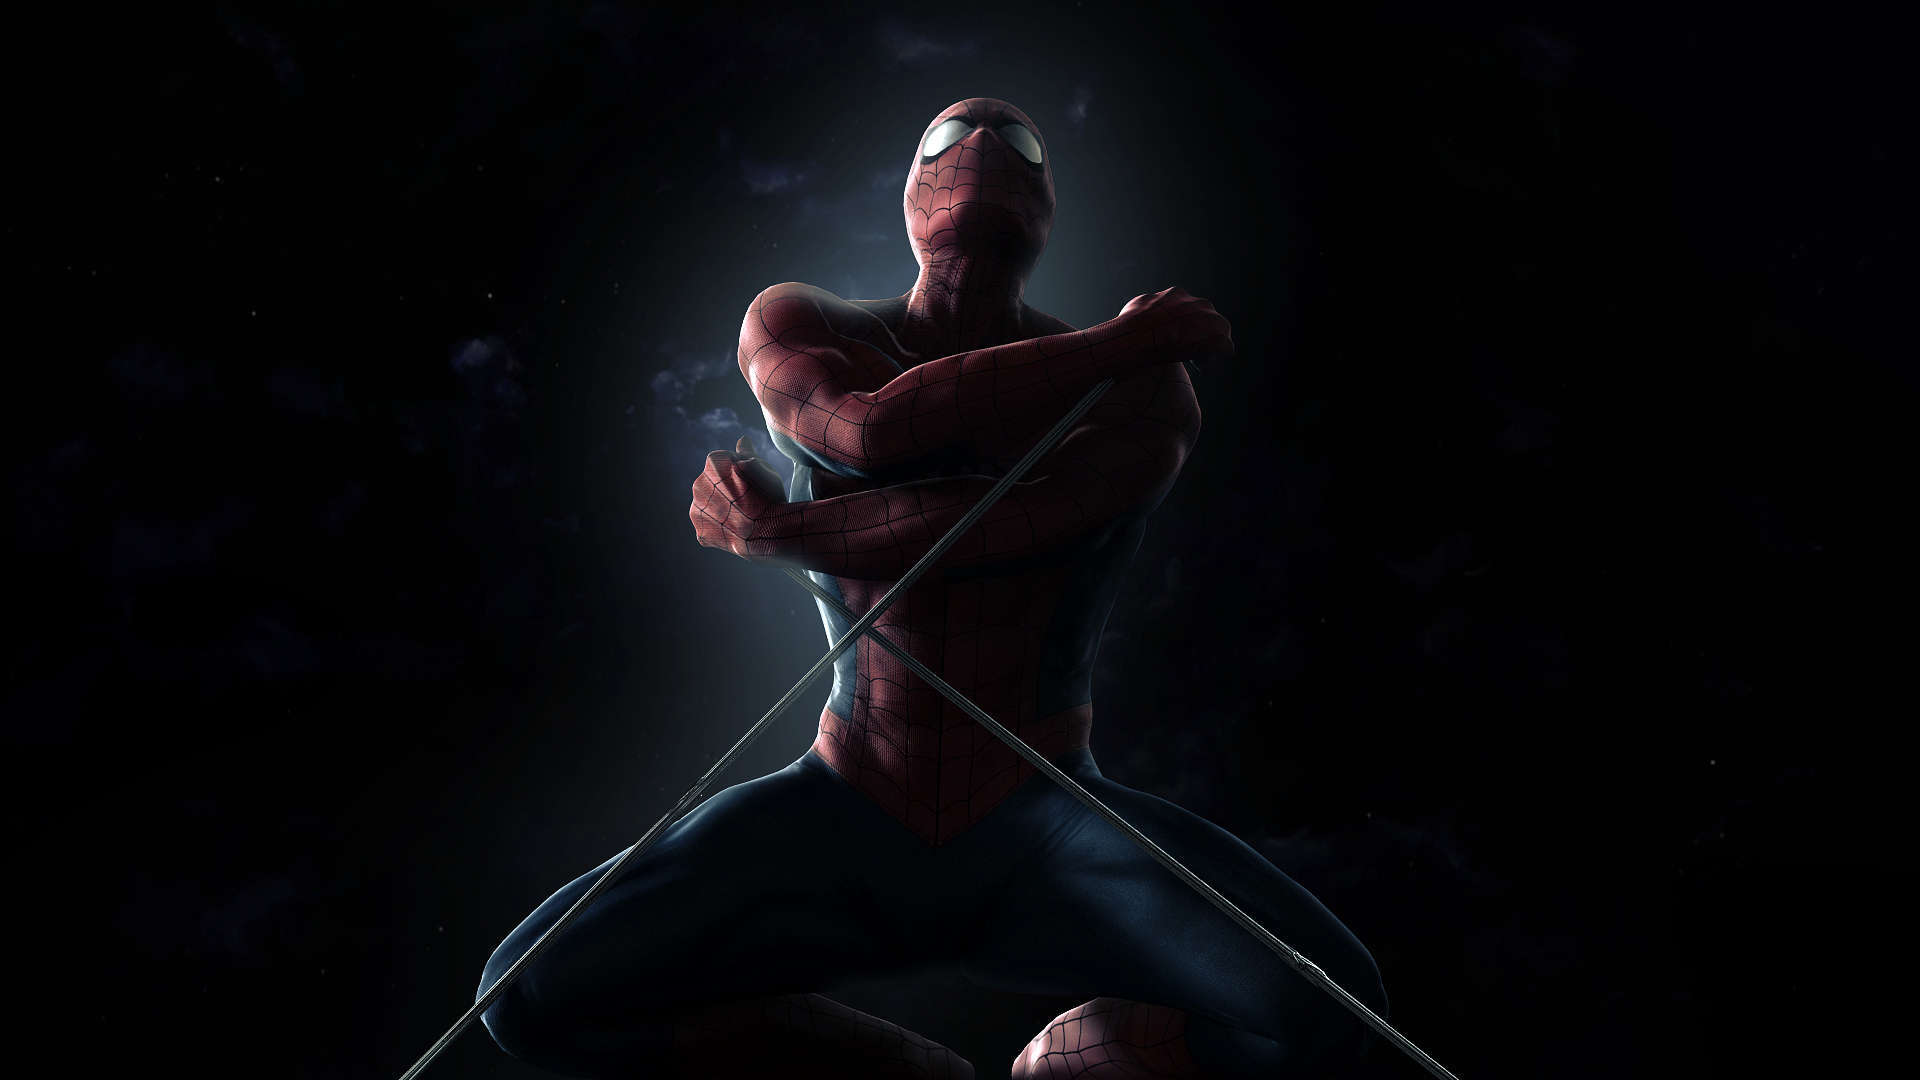 Wallpaper Spiderman HD 1080p Movie Upload At October